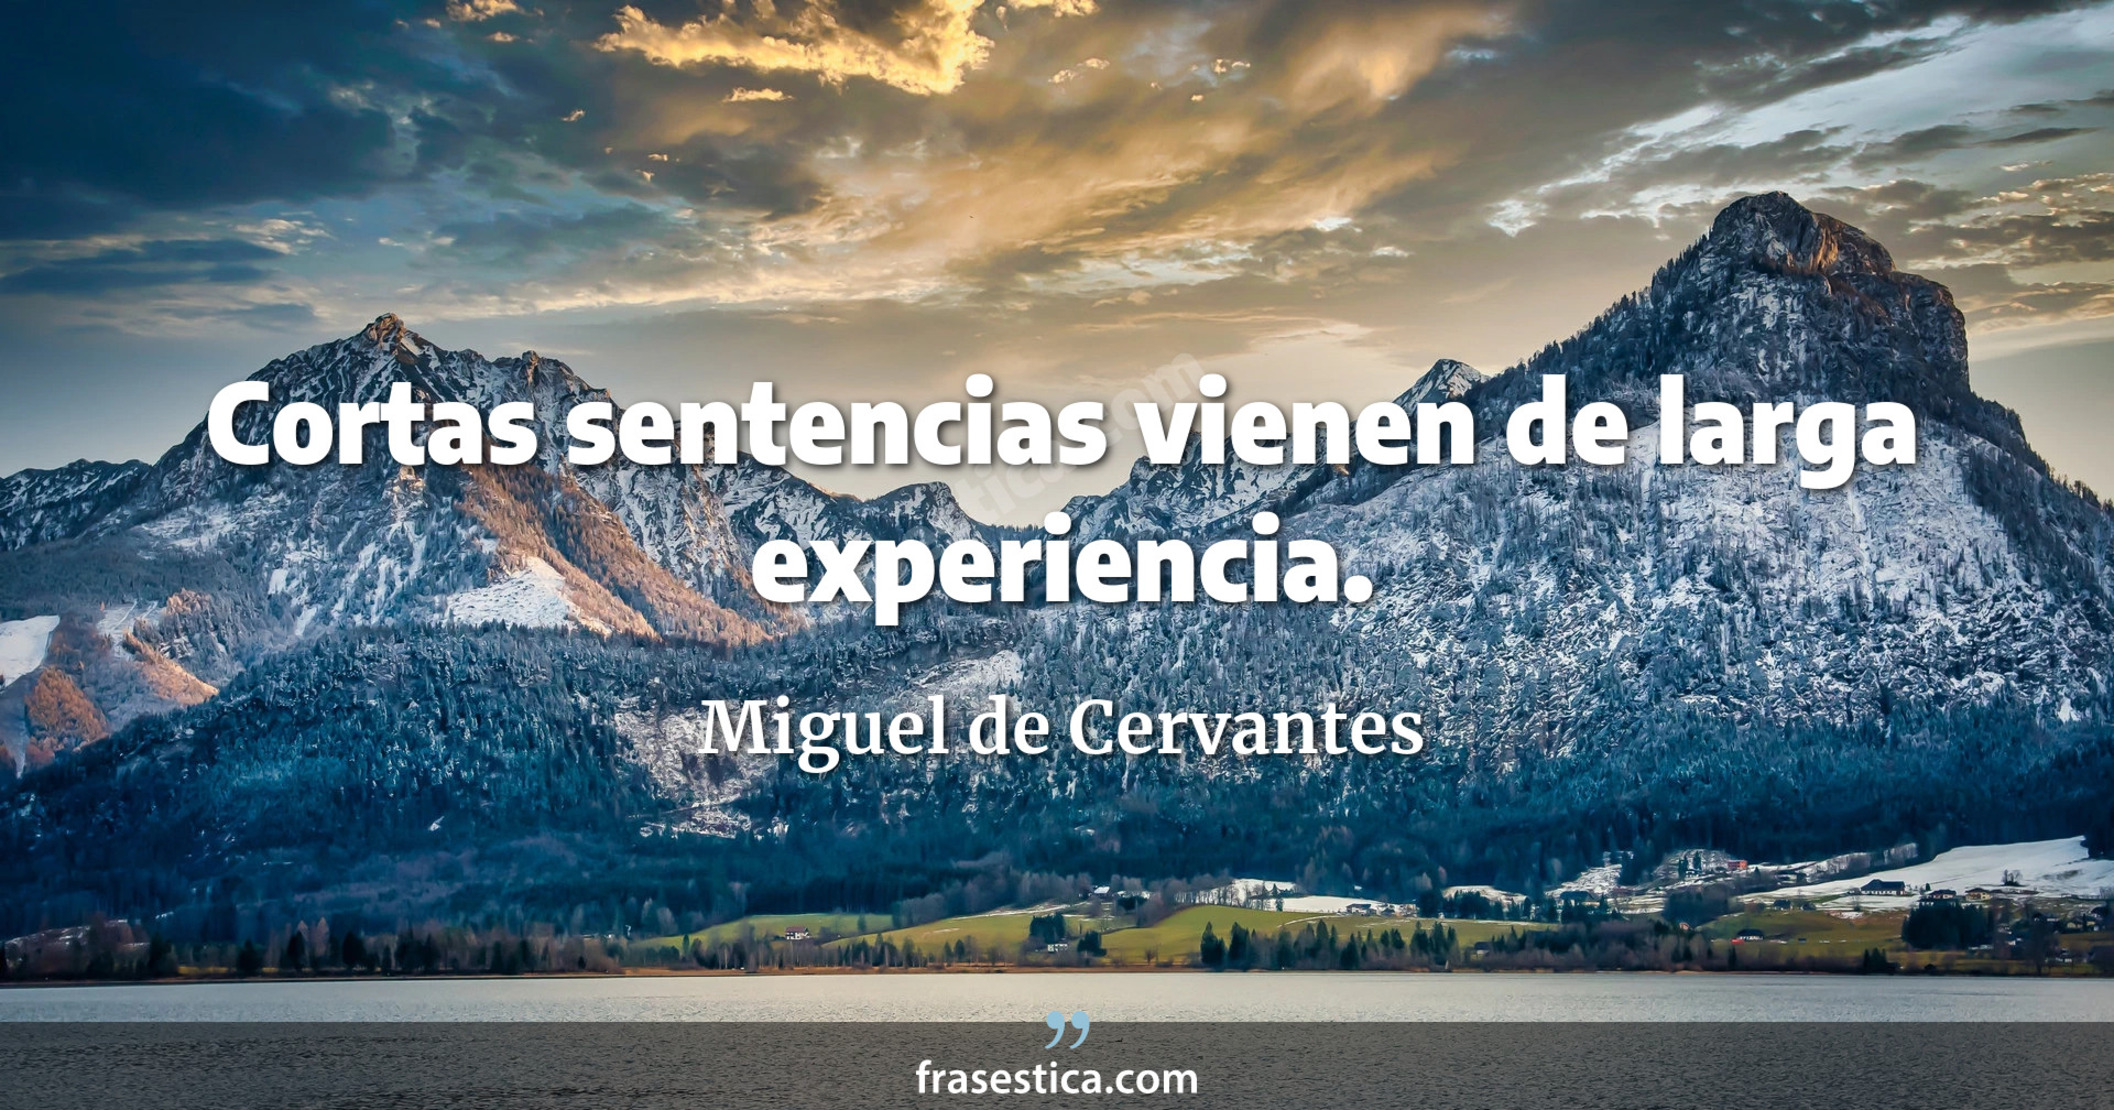 Cortas sentencias vienen de larga experiencia. - Miguel de Cervantes